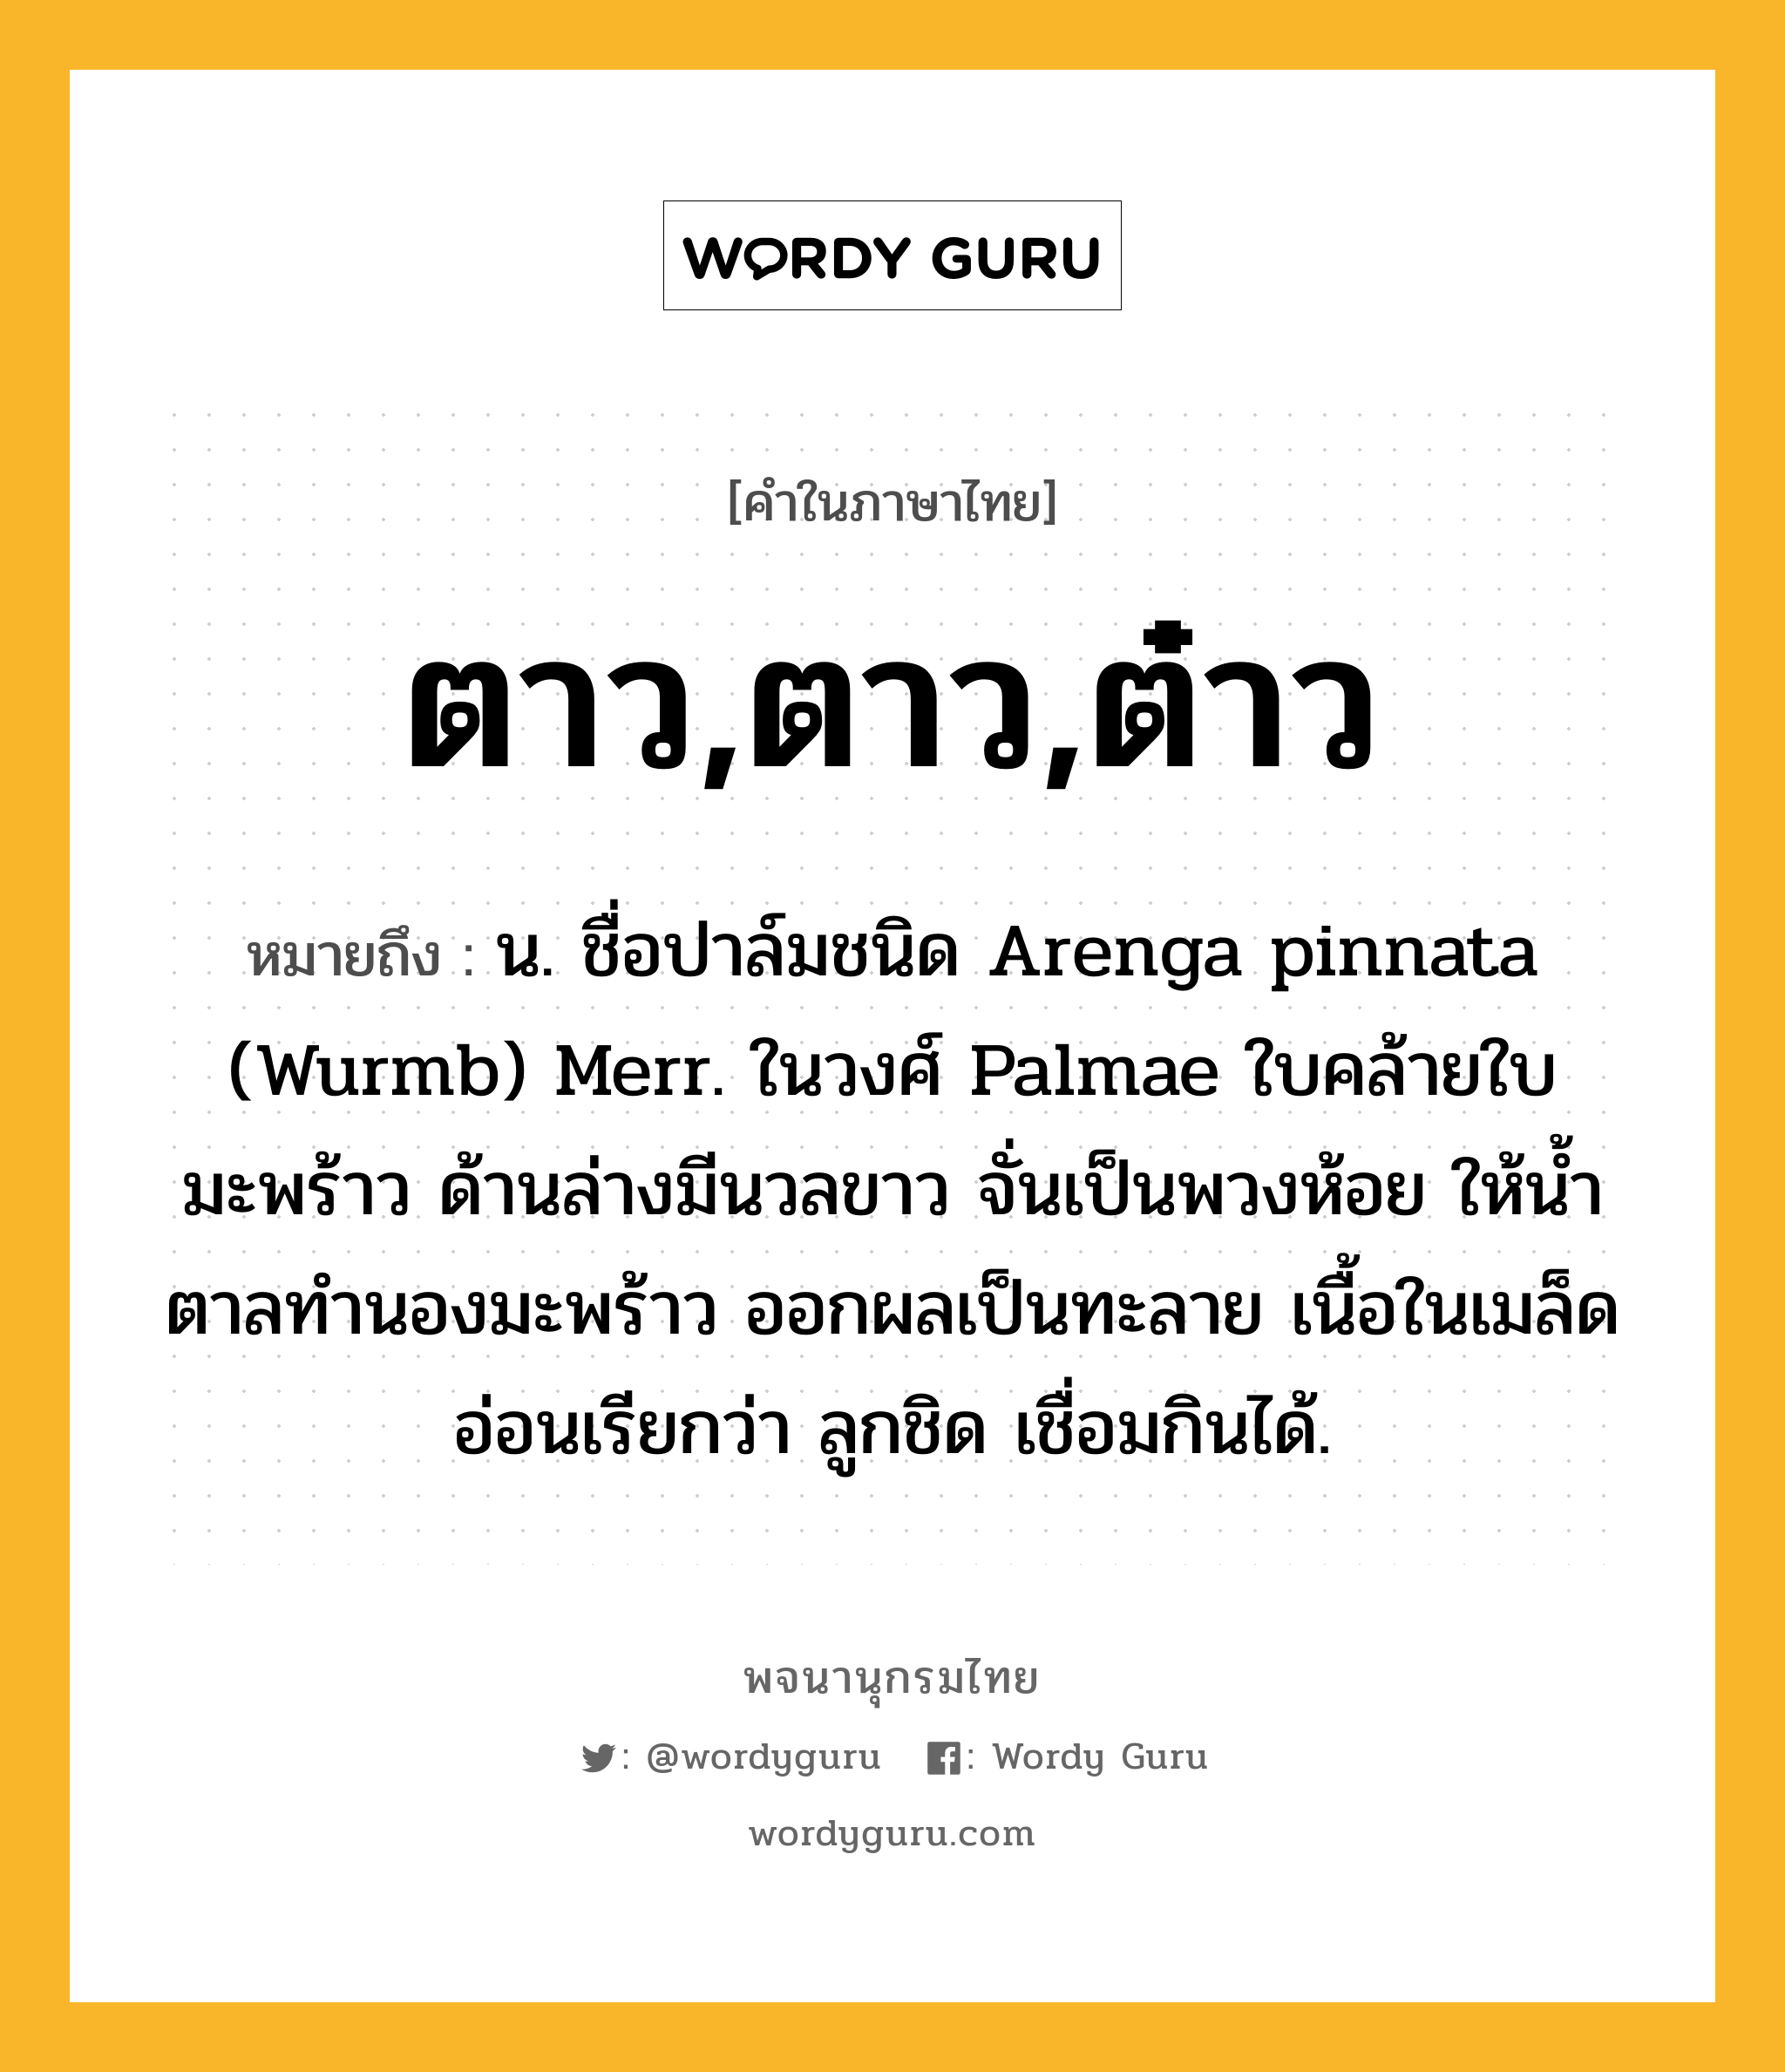 ตาว,ตาว,ต๋าว หมายถึงอะไร?, คำในภาษาไทย ตาว,ตาว,ต๋าว หมายถึง น. ชื่อปาล์มชนิด Arenga pinnata (Wurmb) Merr. ในวงศ์ Palmae ใบคล้ายใบมะพร้าว ด้านล่างมีนวลขาว จั่นเป็นพวงห้อย ให้นํ้าตาลทํานองมะพร้าว ออกผลเป็นทะลาย เนื้อในเมล็ดอ่อนเรียกว่า ลูกชิด เชื่อมกินได้.